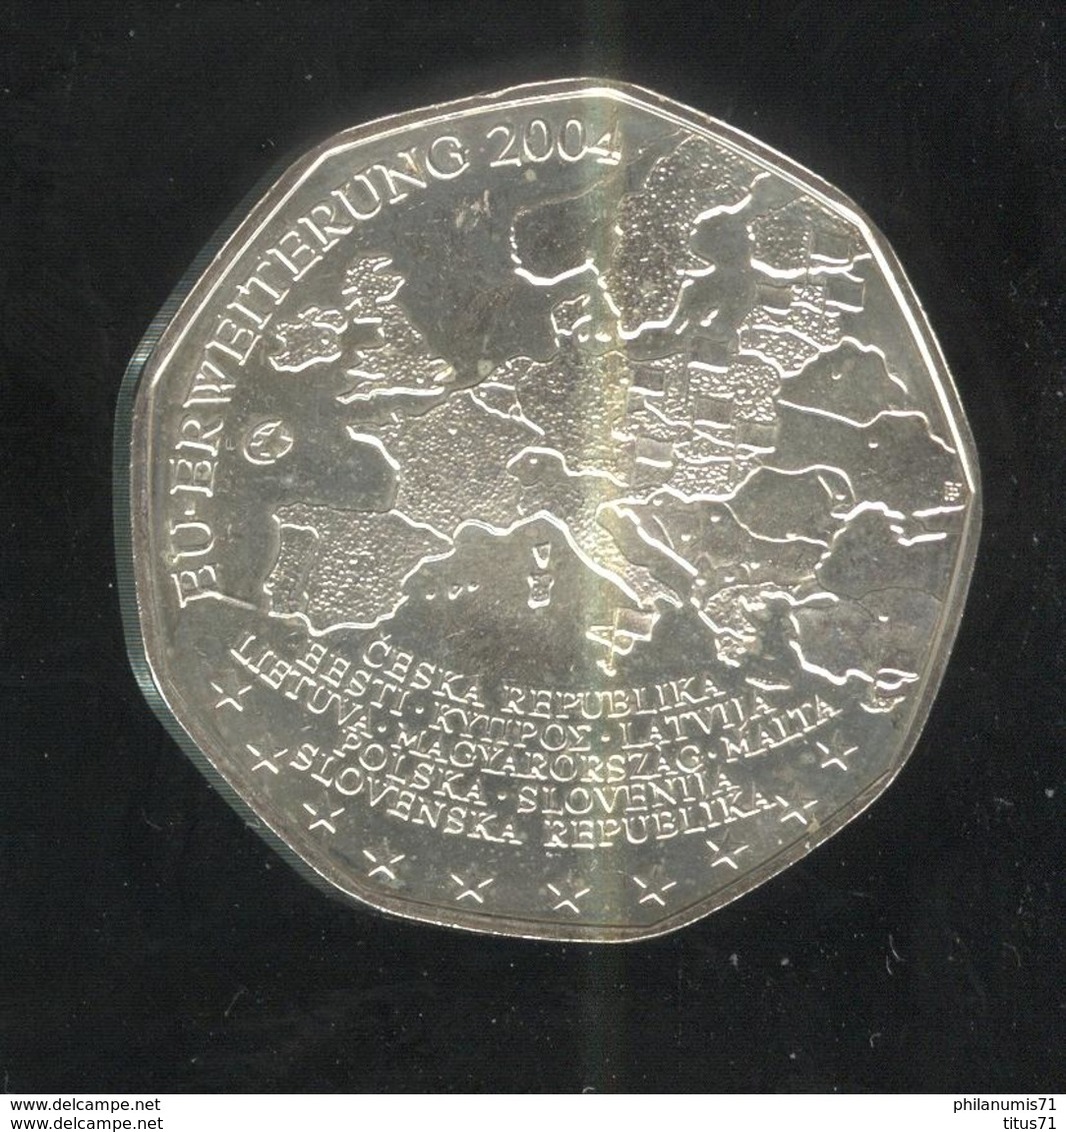 5 Euros Autriche Argent 2004 - Élargissement De L'Union Européenne De 2004 - SUP - Oostenrijk